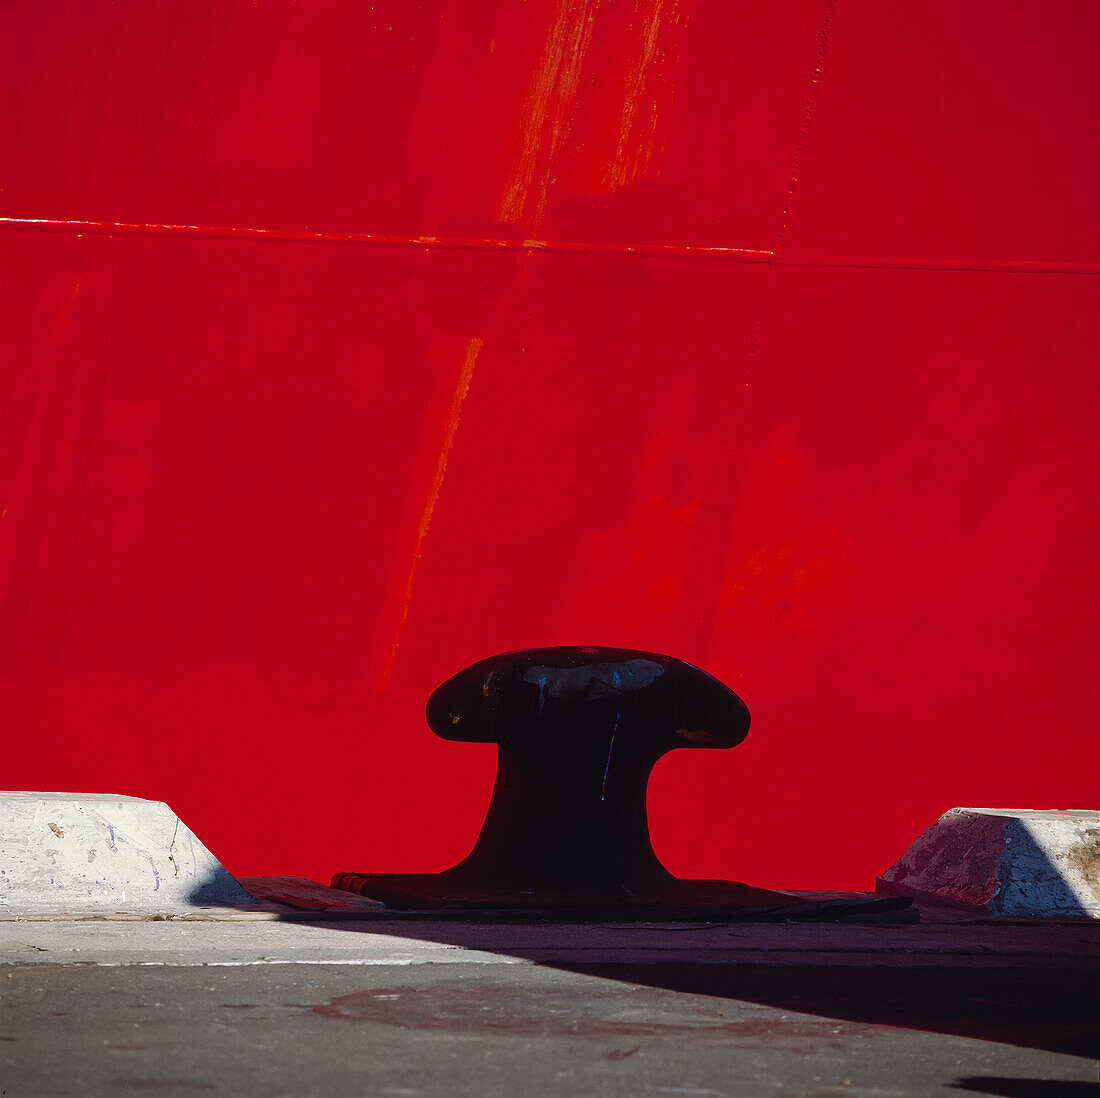 Close up of mooring bollard at wharf edge against hull of red ship